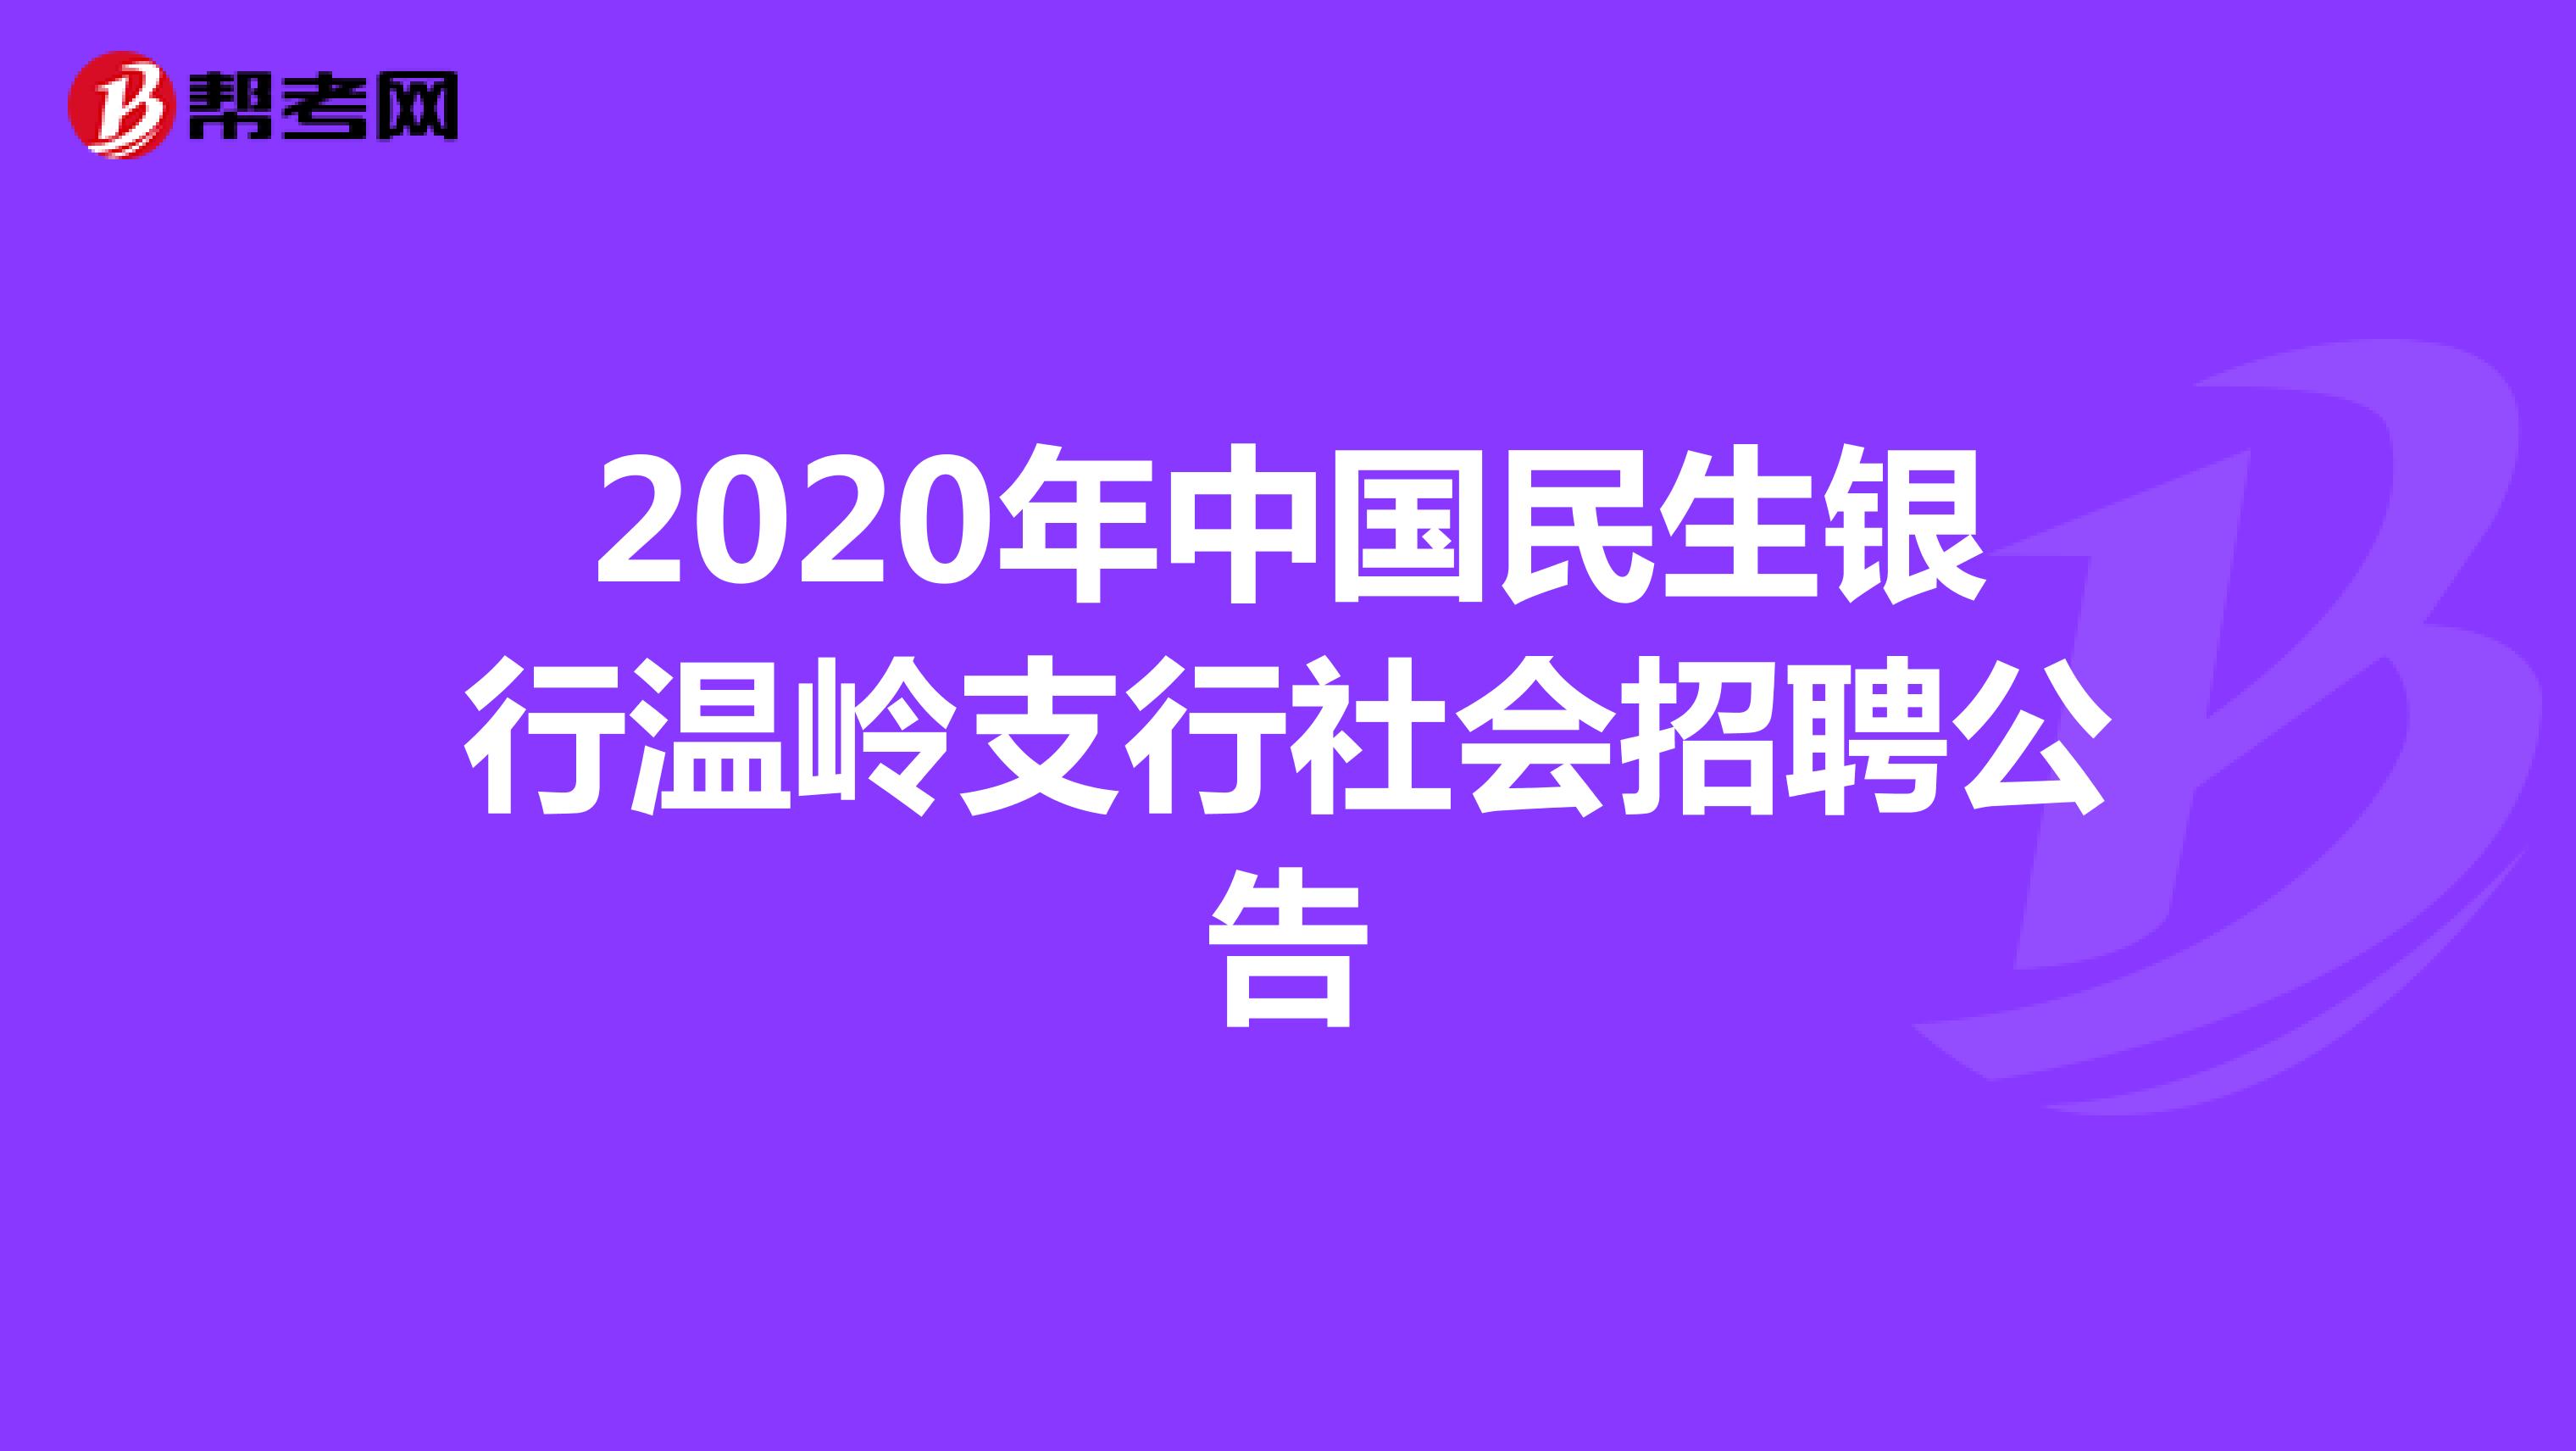 2020年中国民生银行温岭支行社会招聘公告